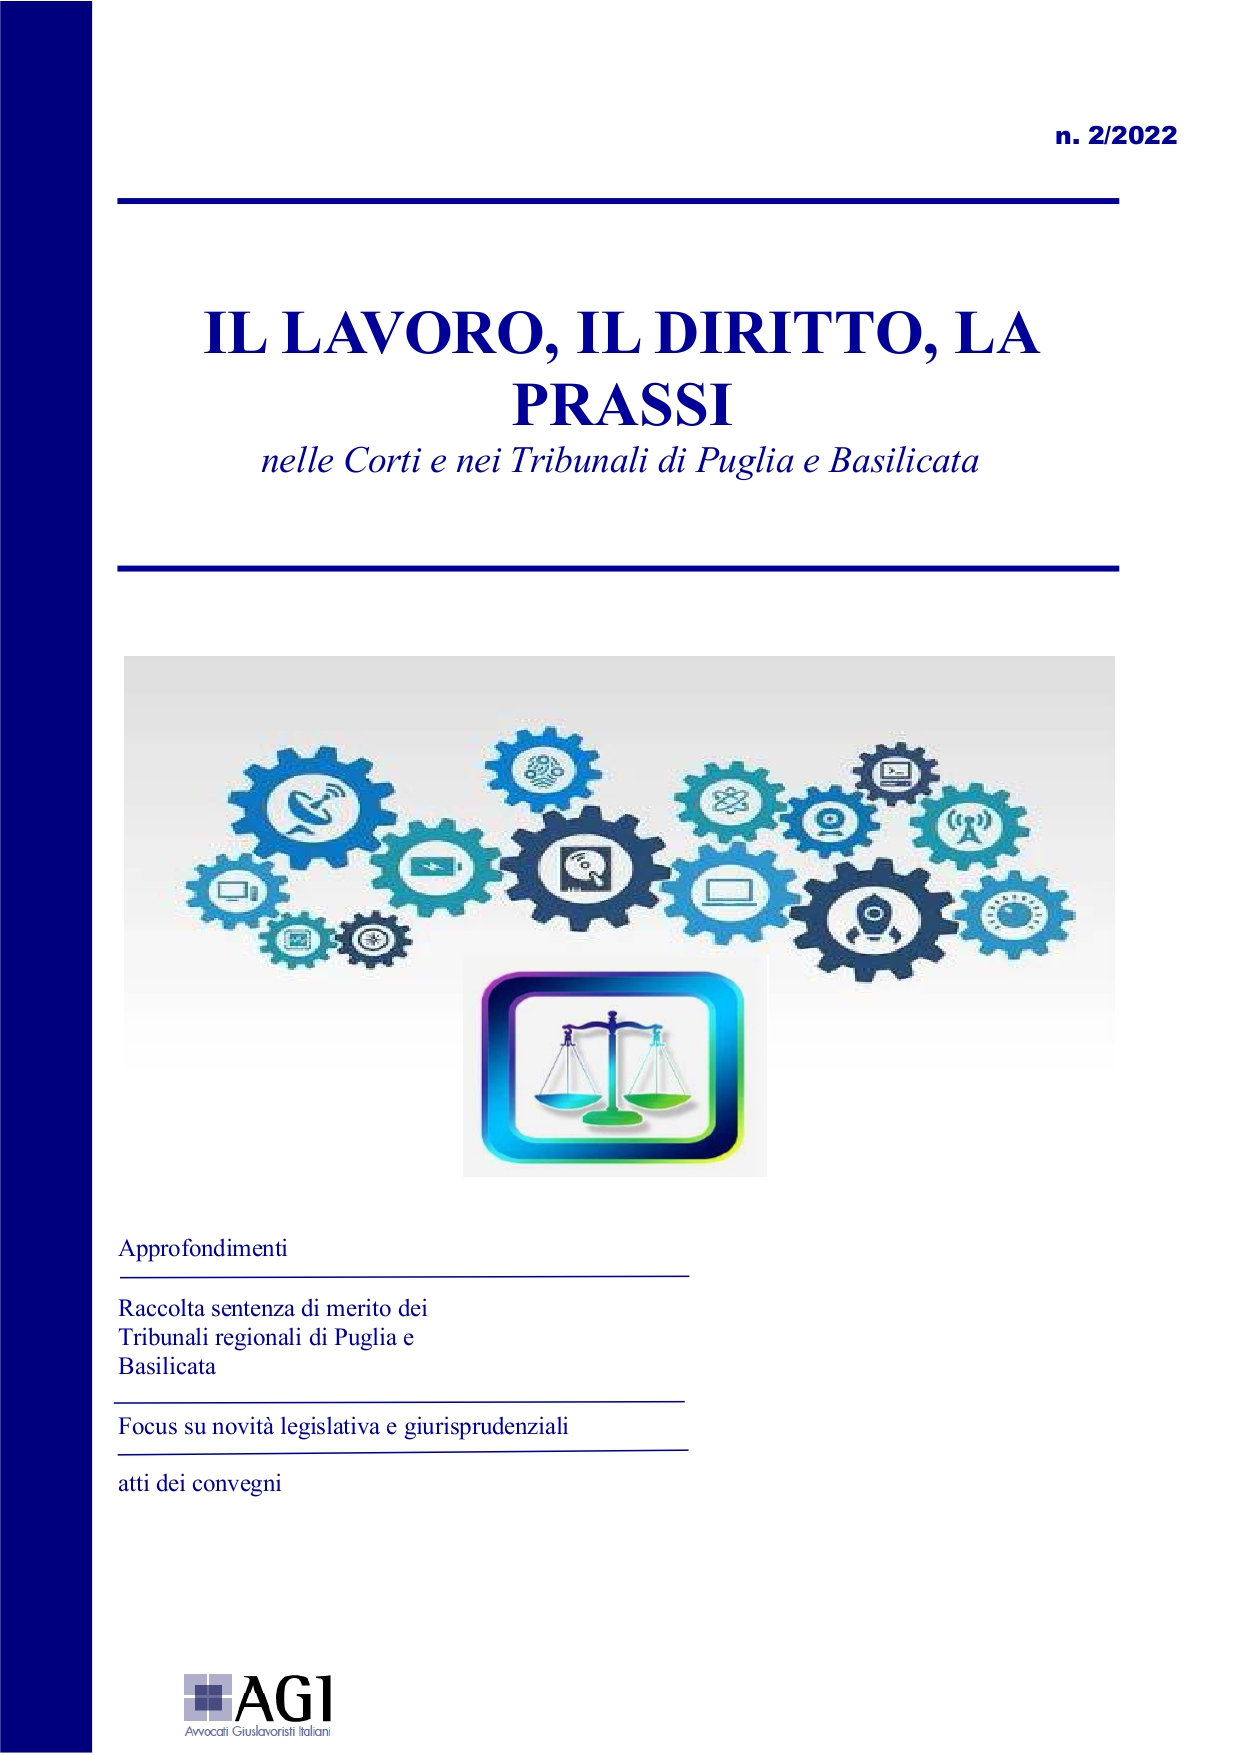 Il lavoro, il diritto, la prassi nelle Corti e nei Tribunale di Puglia e Basilicata